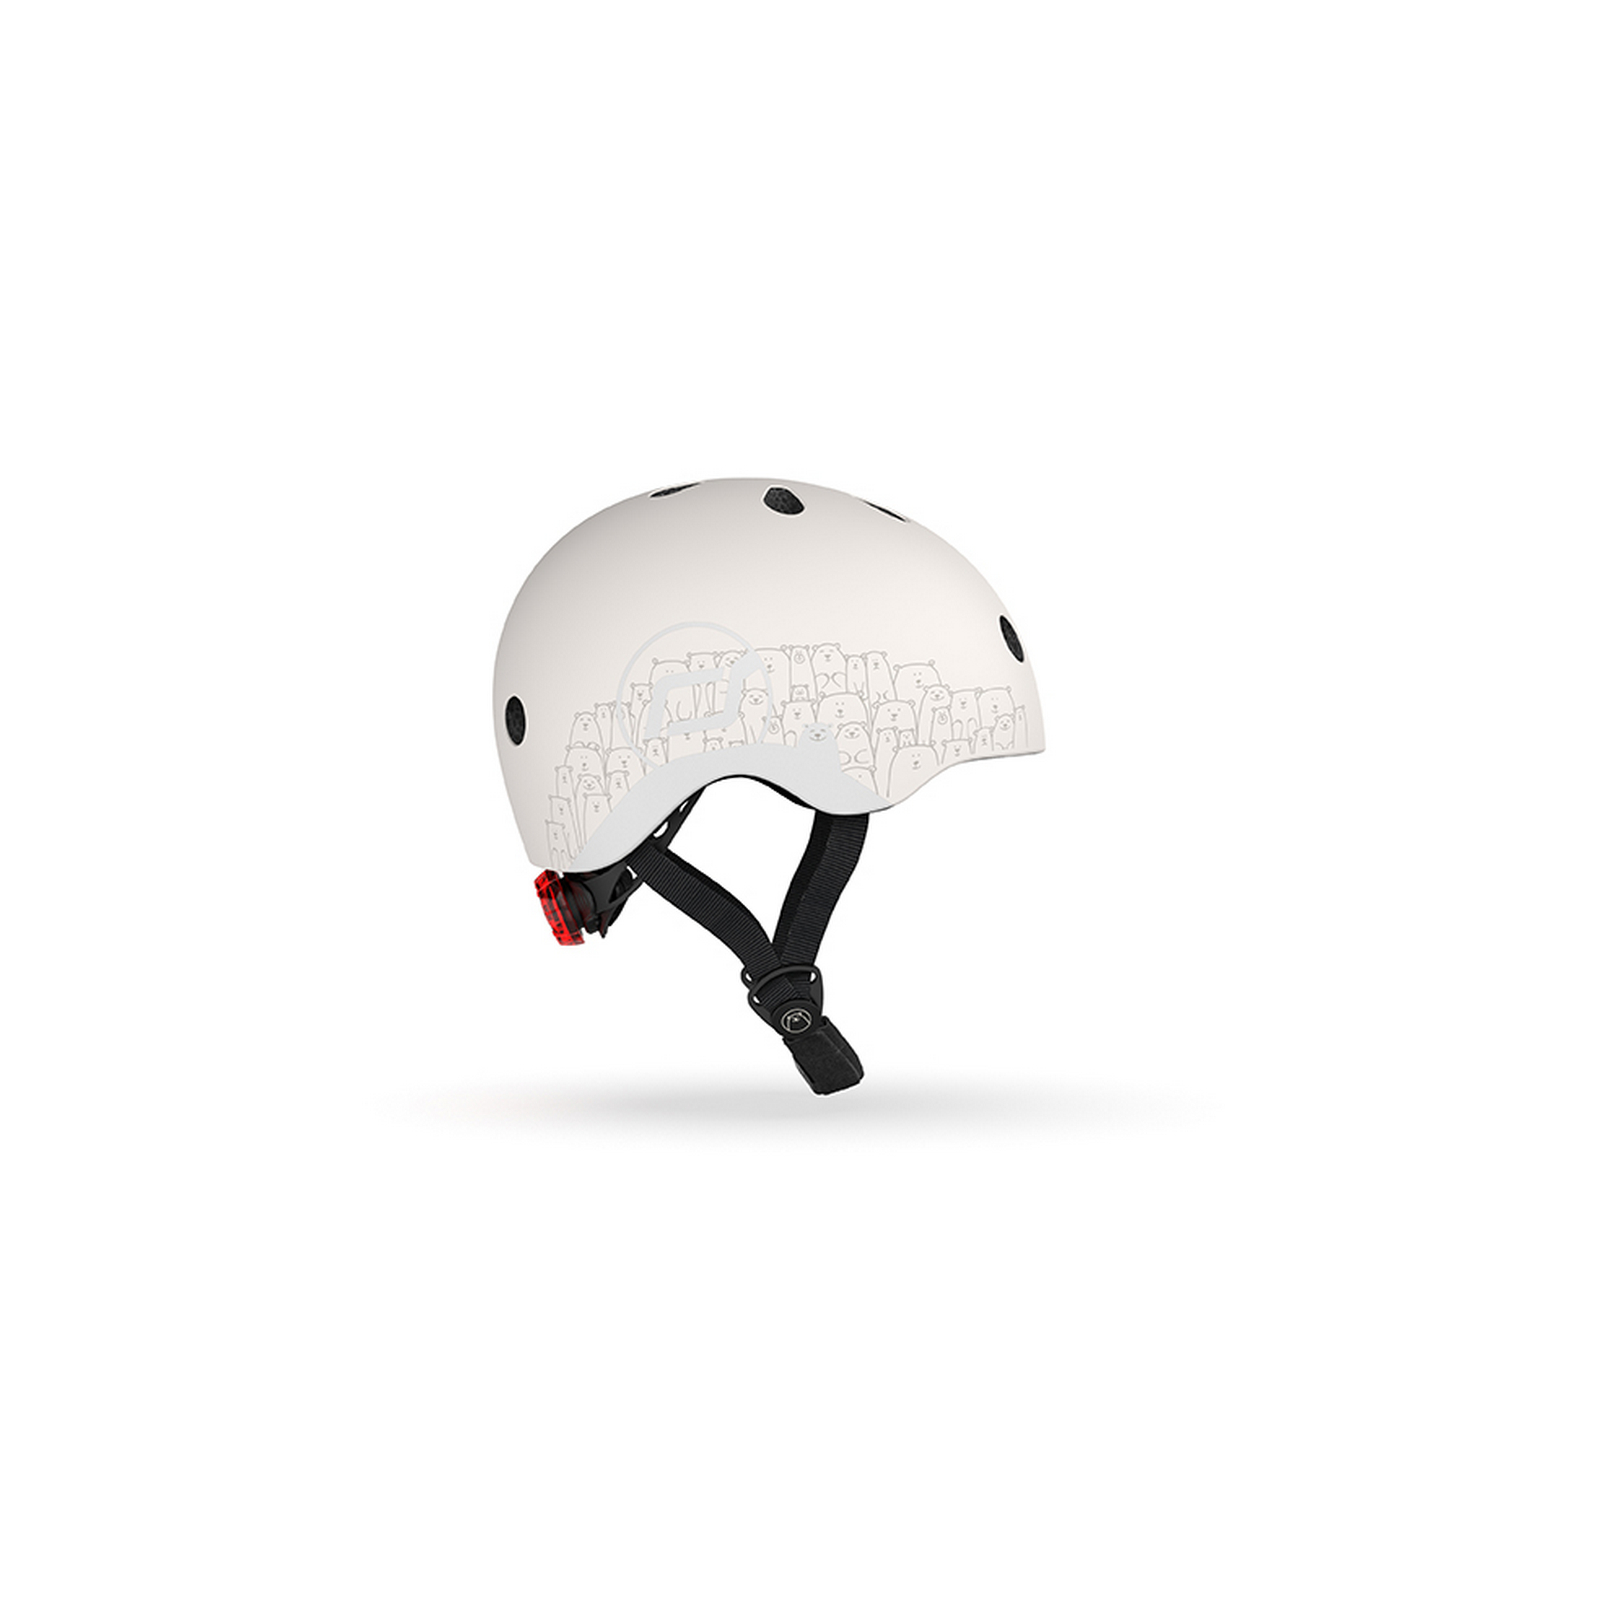 Шлем защитный Scoot and Ride светоотражающий, с фонариком, 45-51 см (XXS/XS), светло-серый (SR-210225-ASH) - фото 2